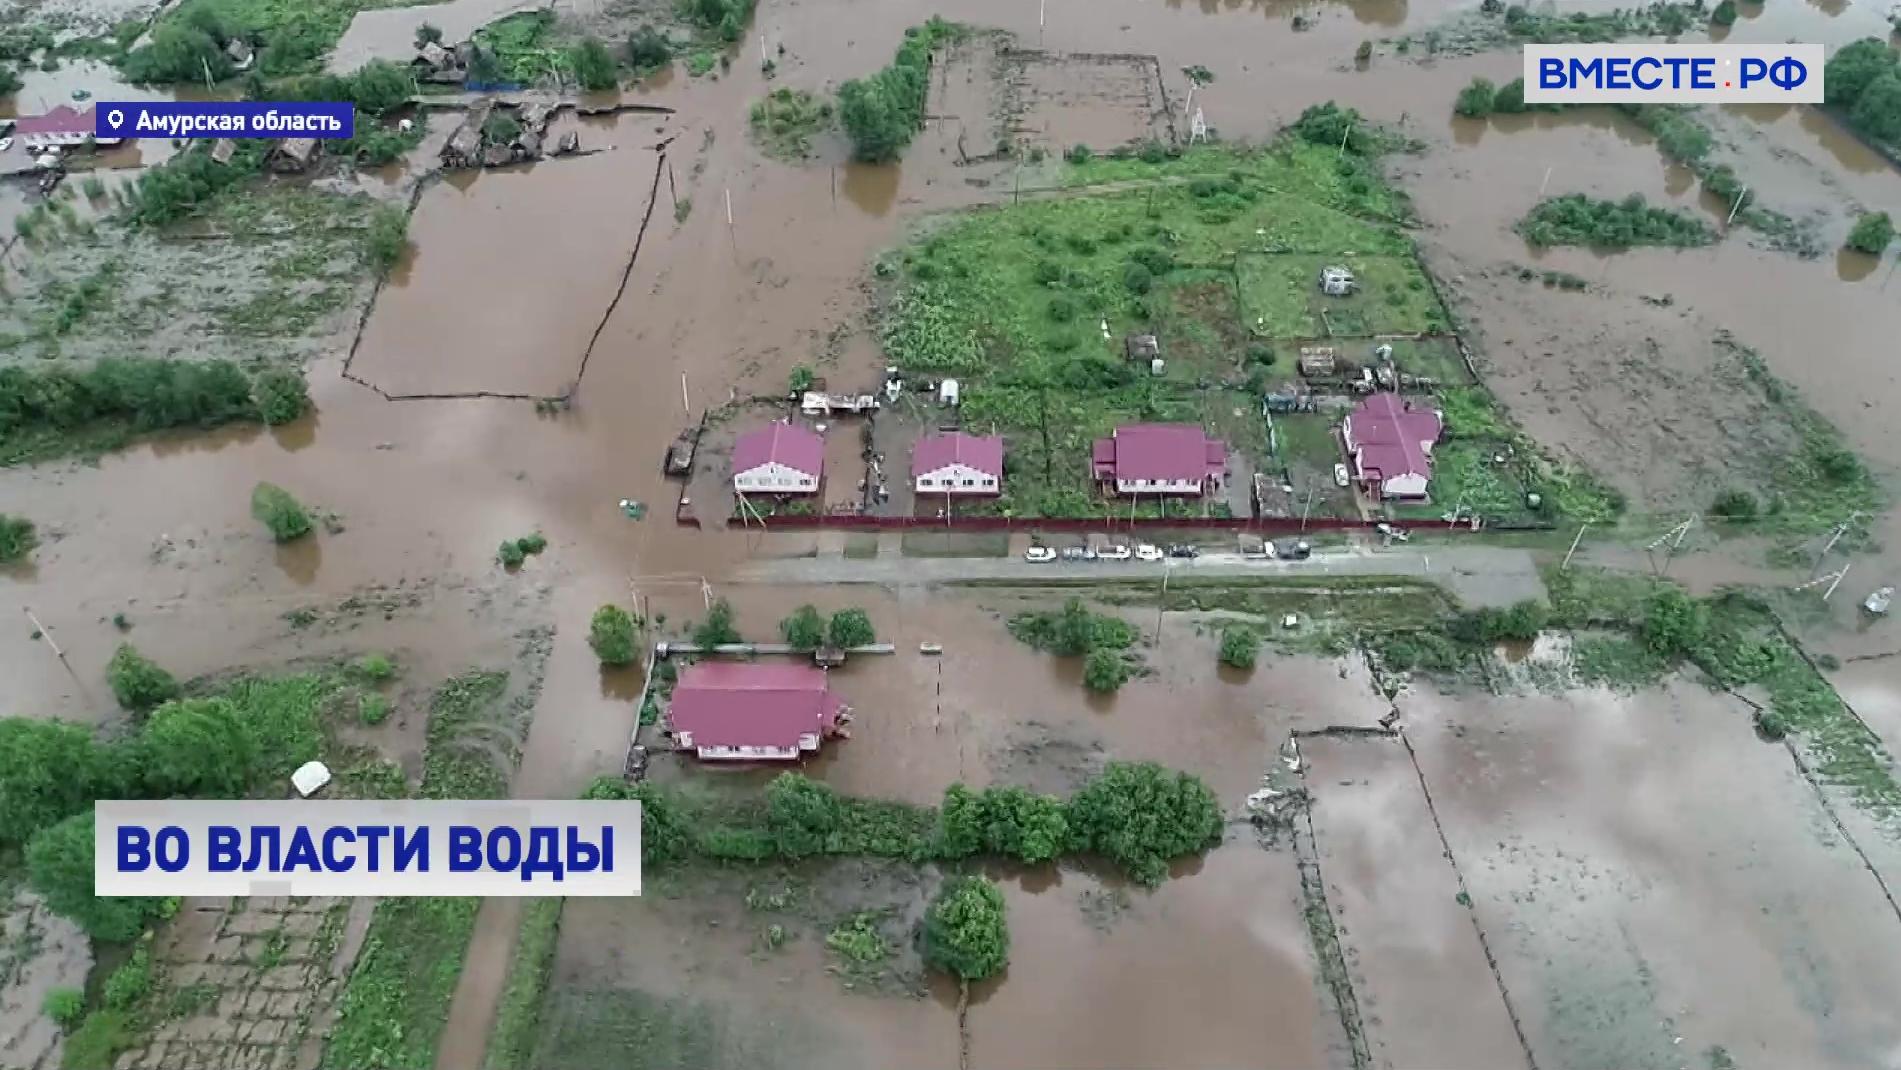 Около 80 жилых домов остаются подтопленными из-за паводков в Амурской области